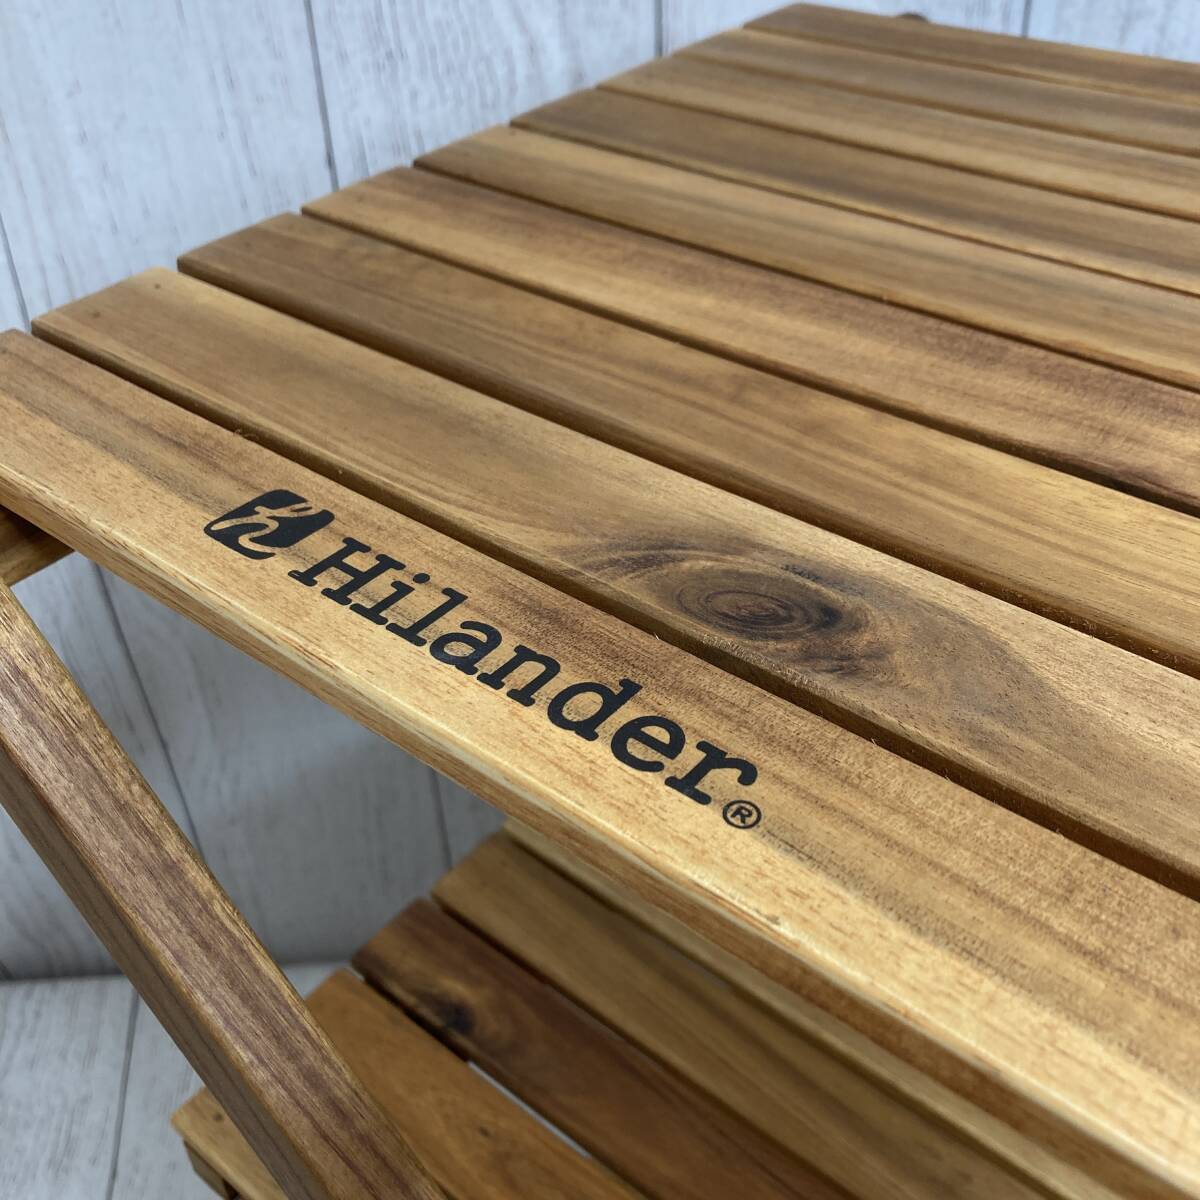 【新品未開封】Hilander(ハイランダー) ウッドラック 3段 専用ケース付き 木製ラック 425 HCTT-001 /Y21111-V3_画像5